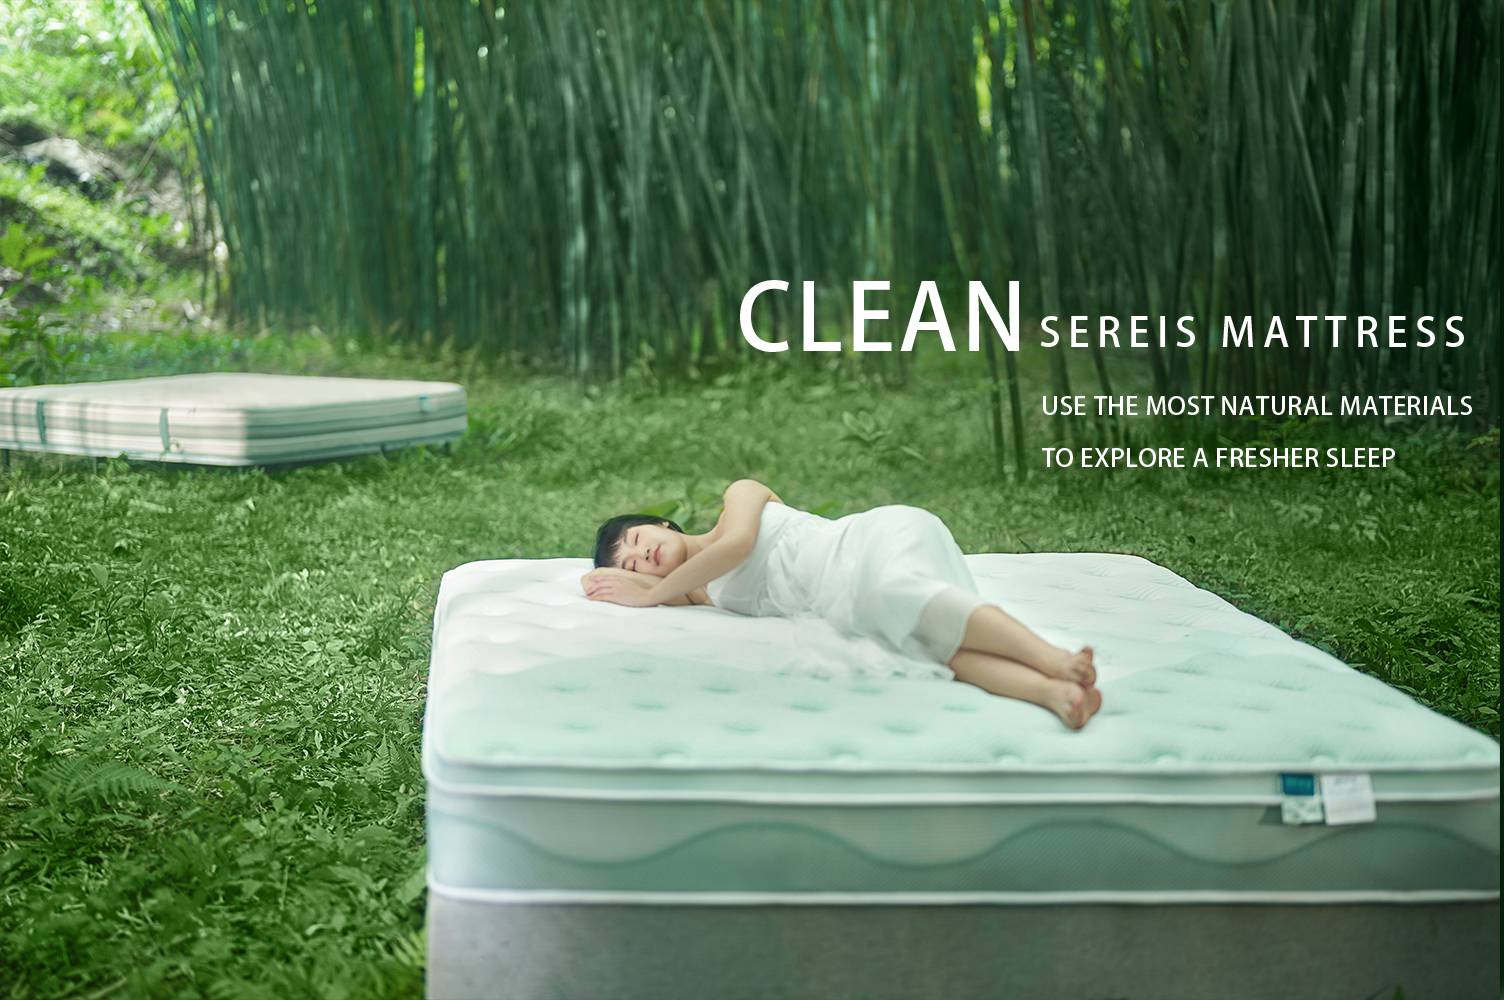 Les matelas de la série LINSY clean , offrent une nouvelle expérience de sommeil